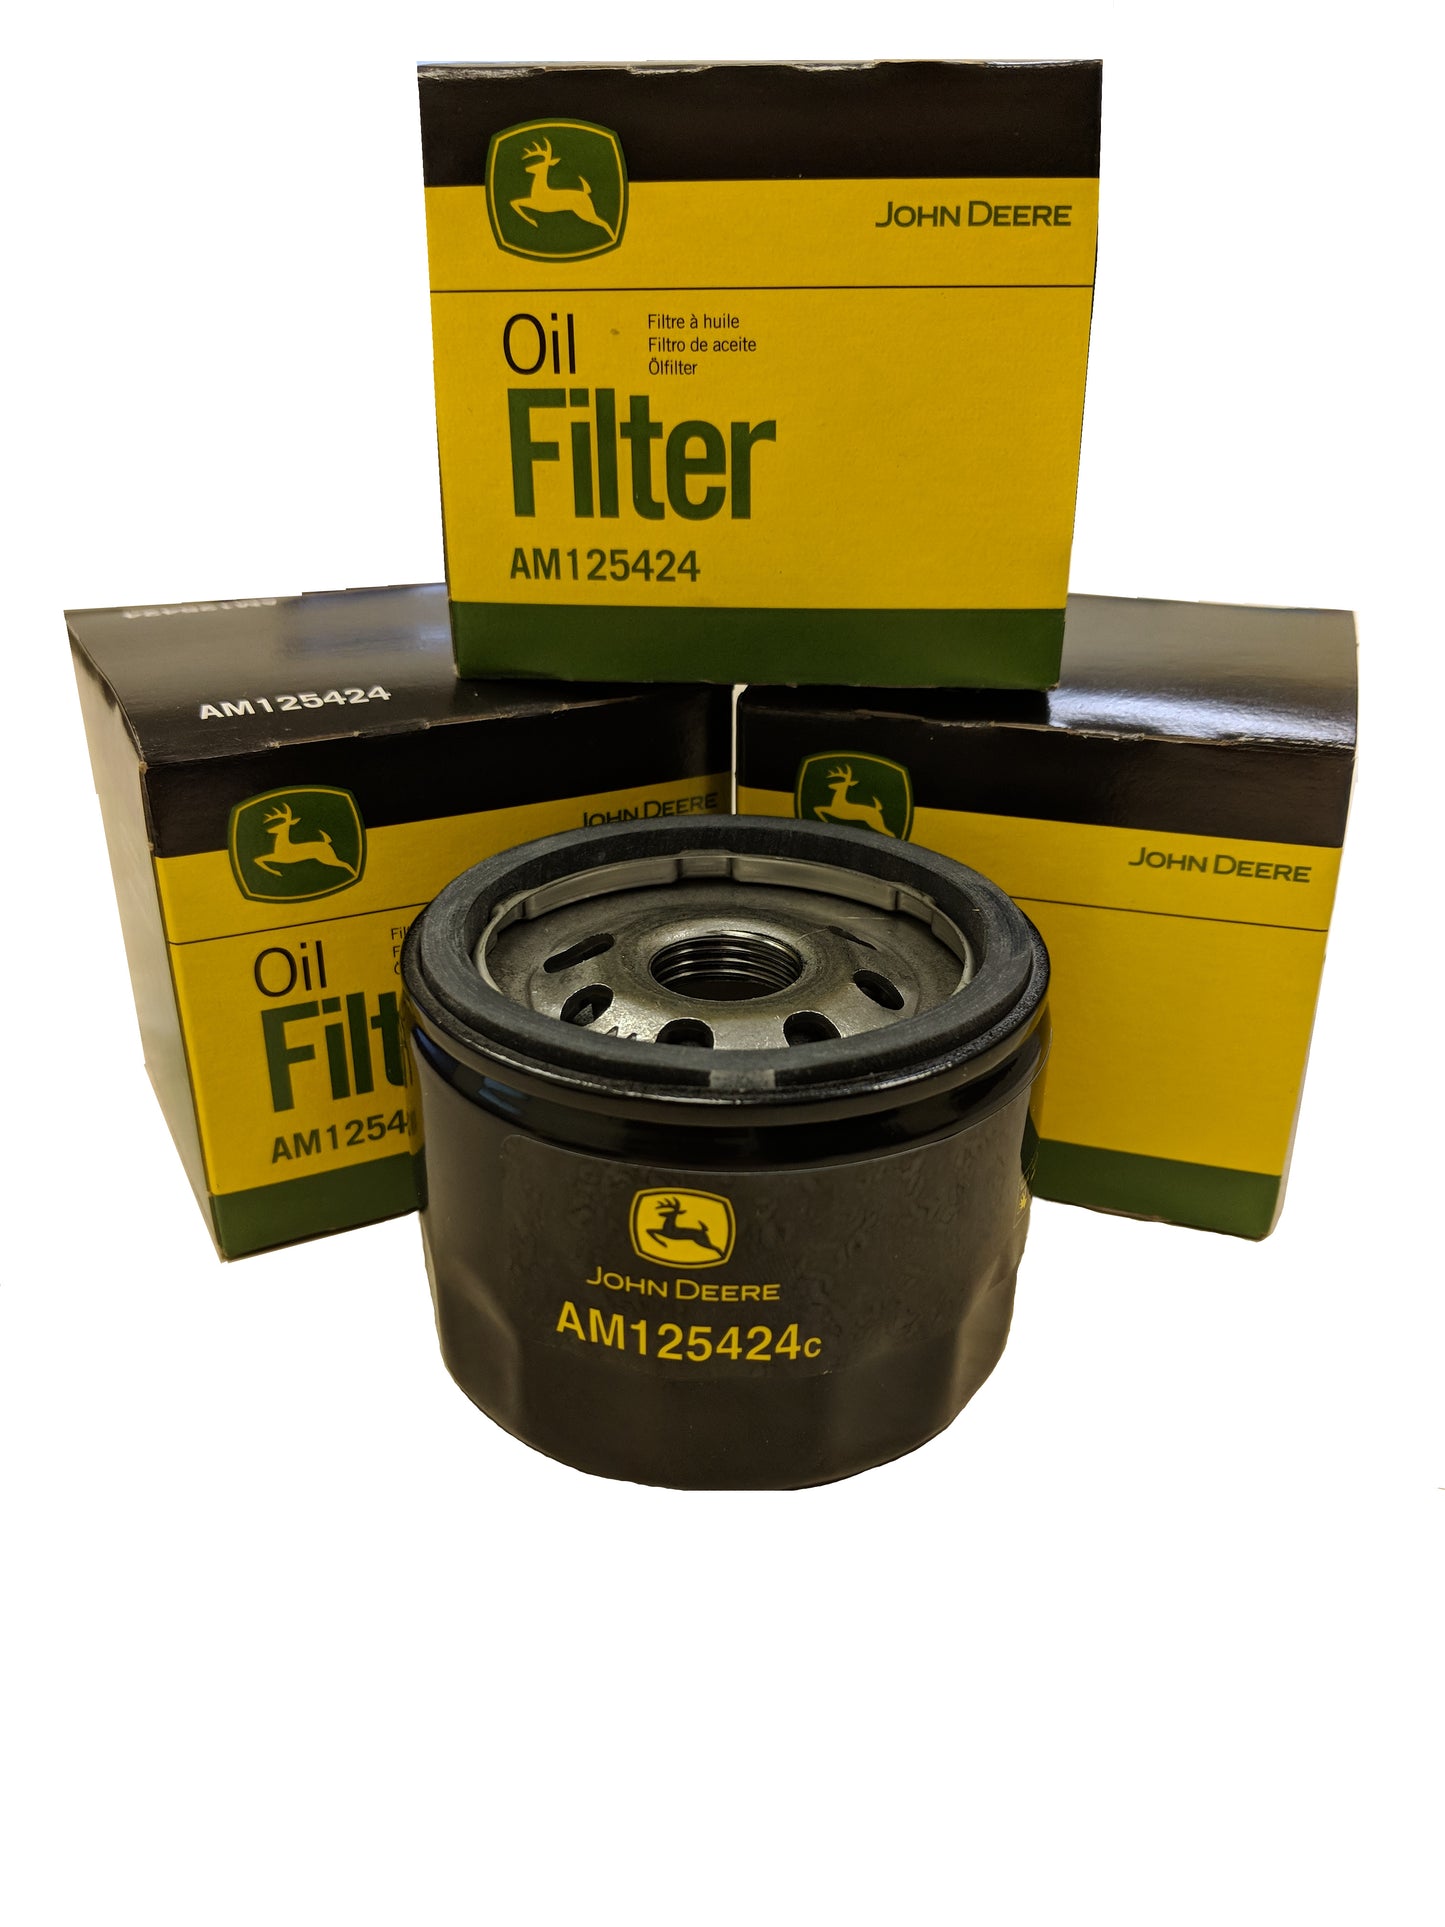 John Deere Original Equipment Oil Filter #AM125424 (Qty 4)